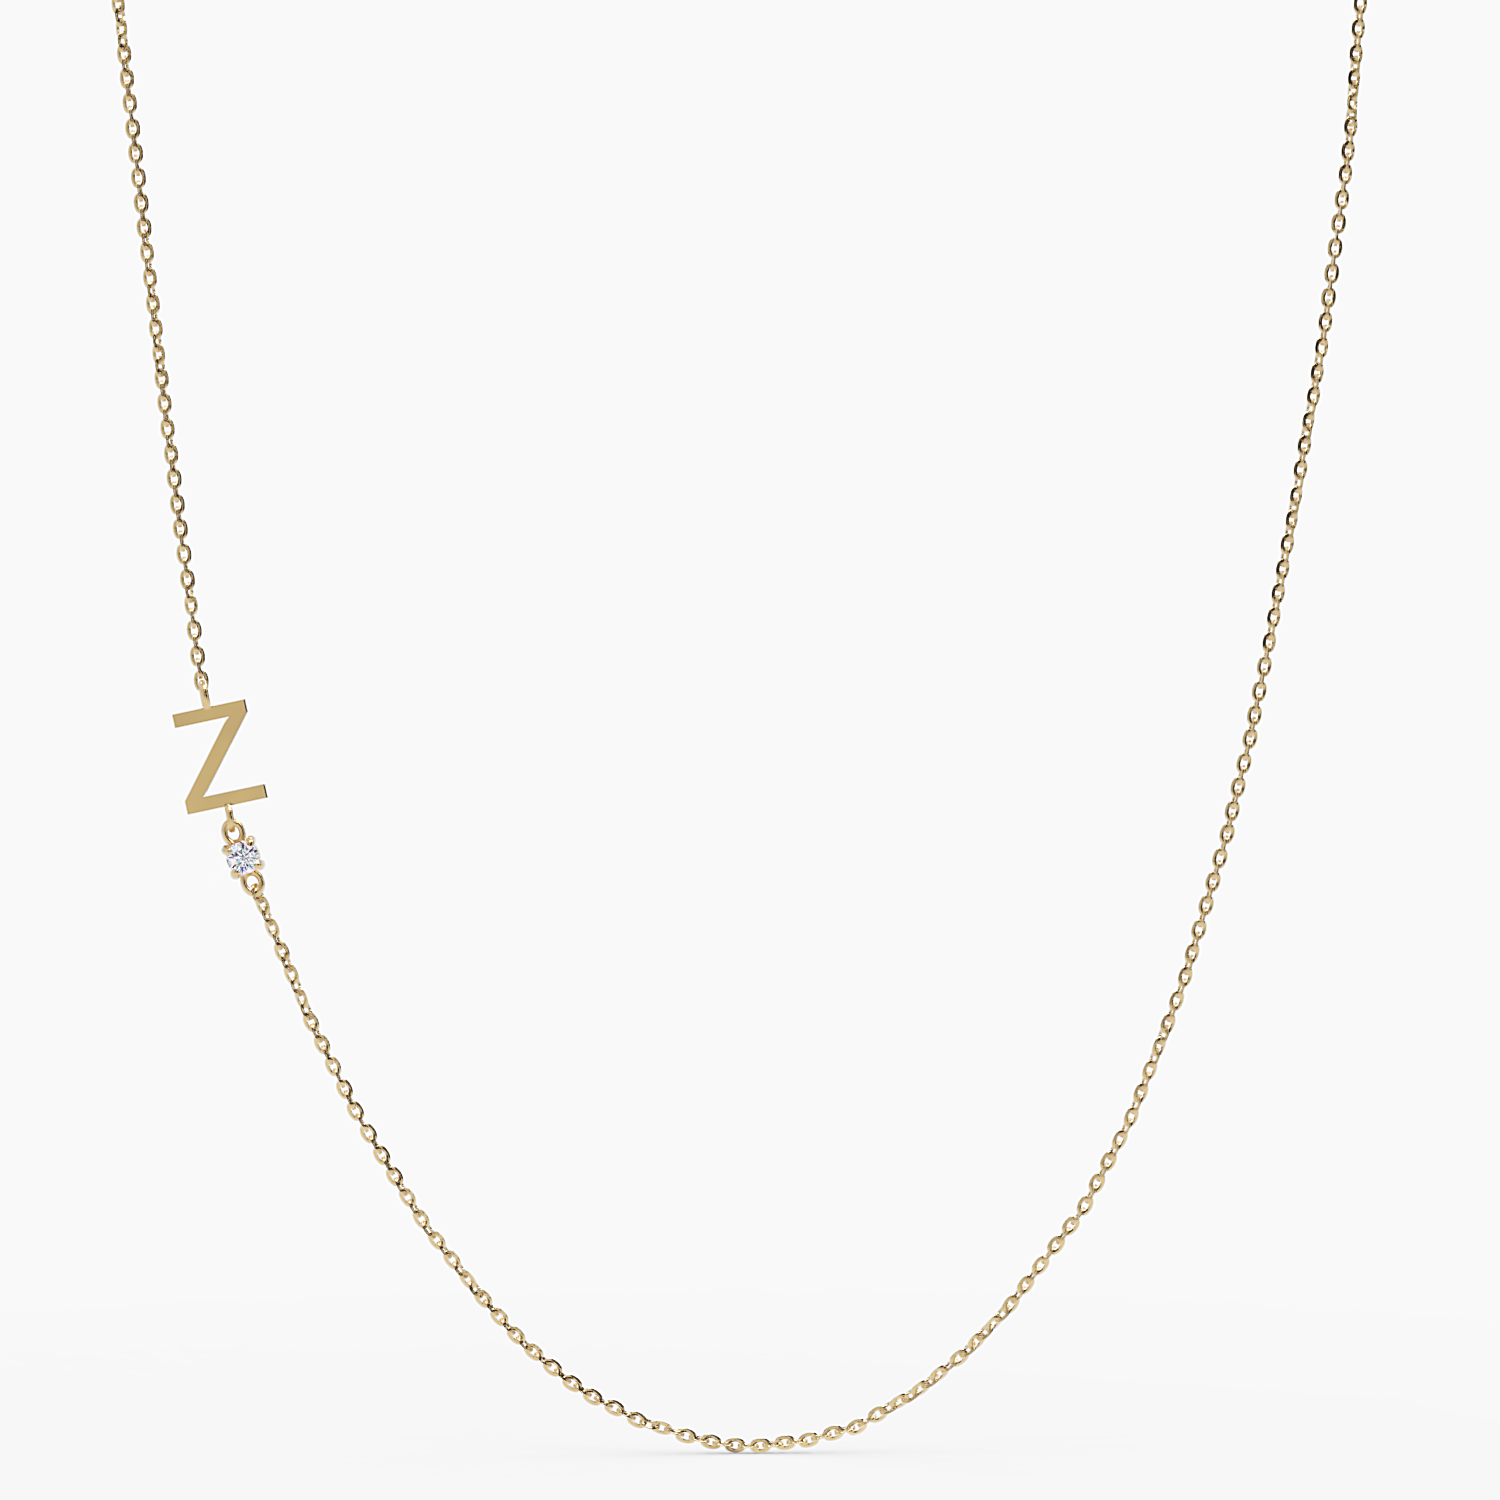 Sideways Initial Z Necklace with Diamond